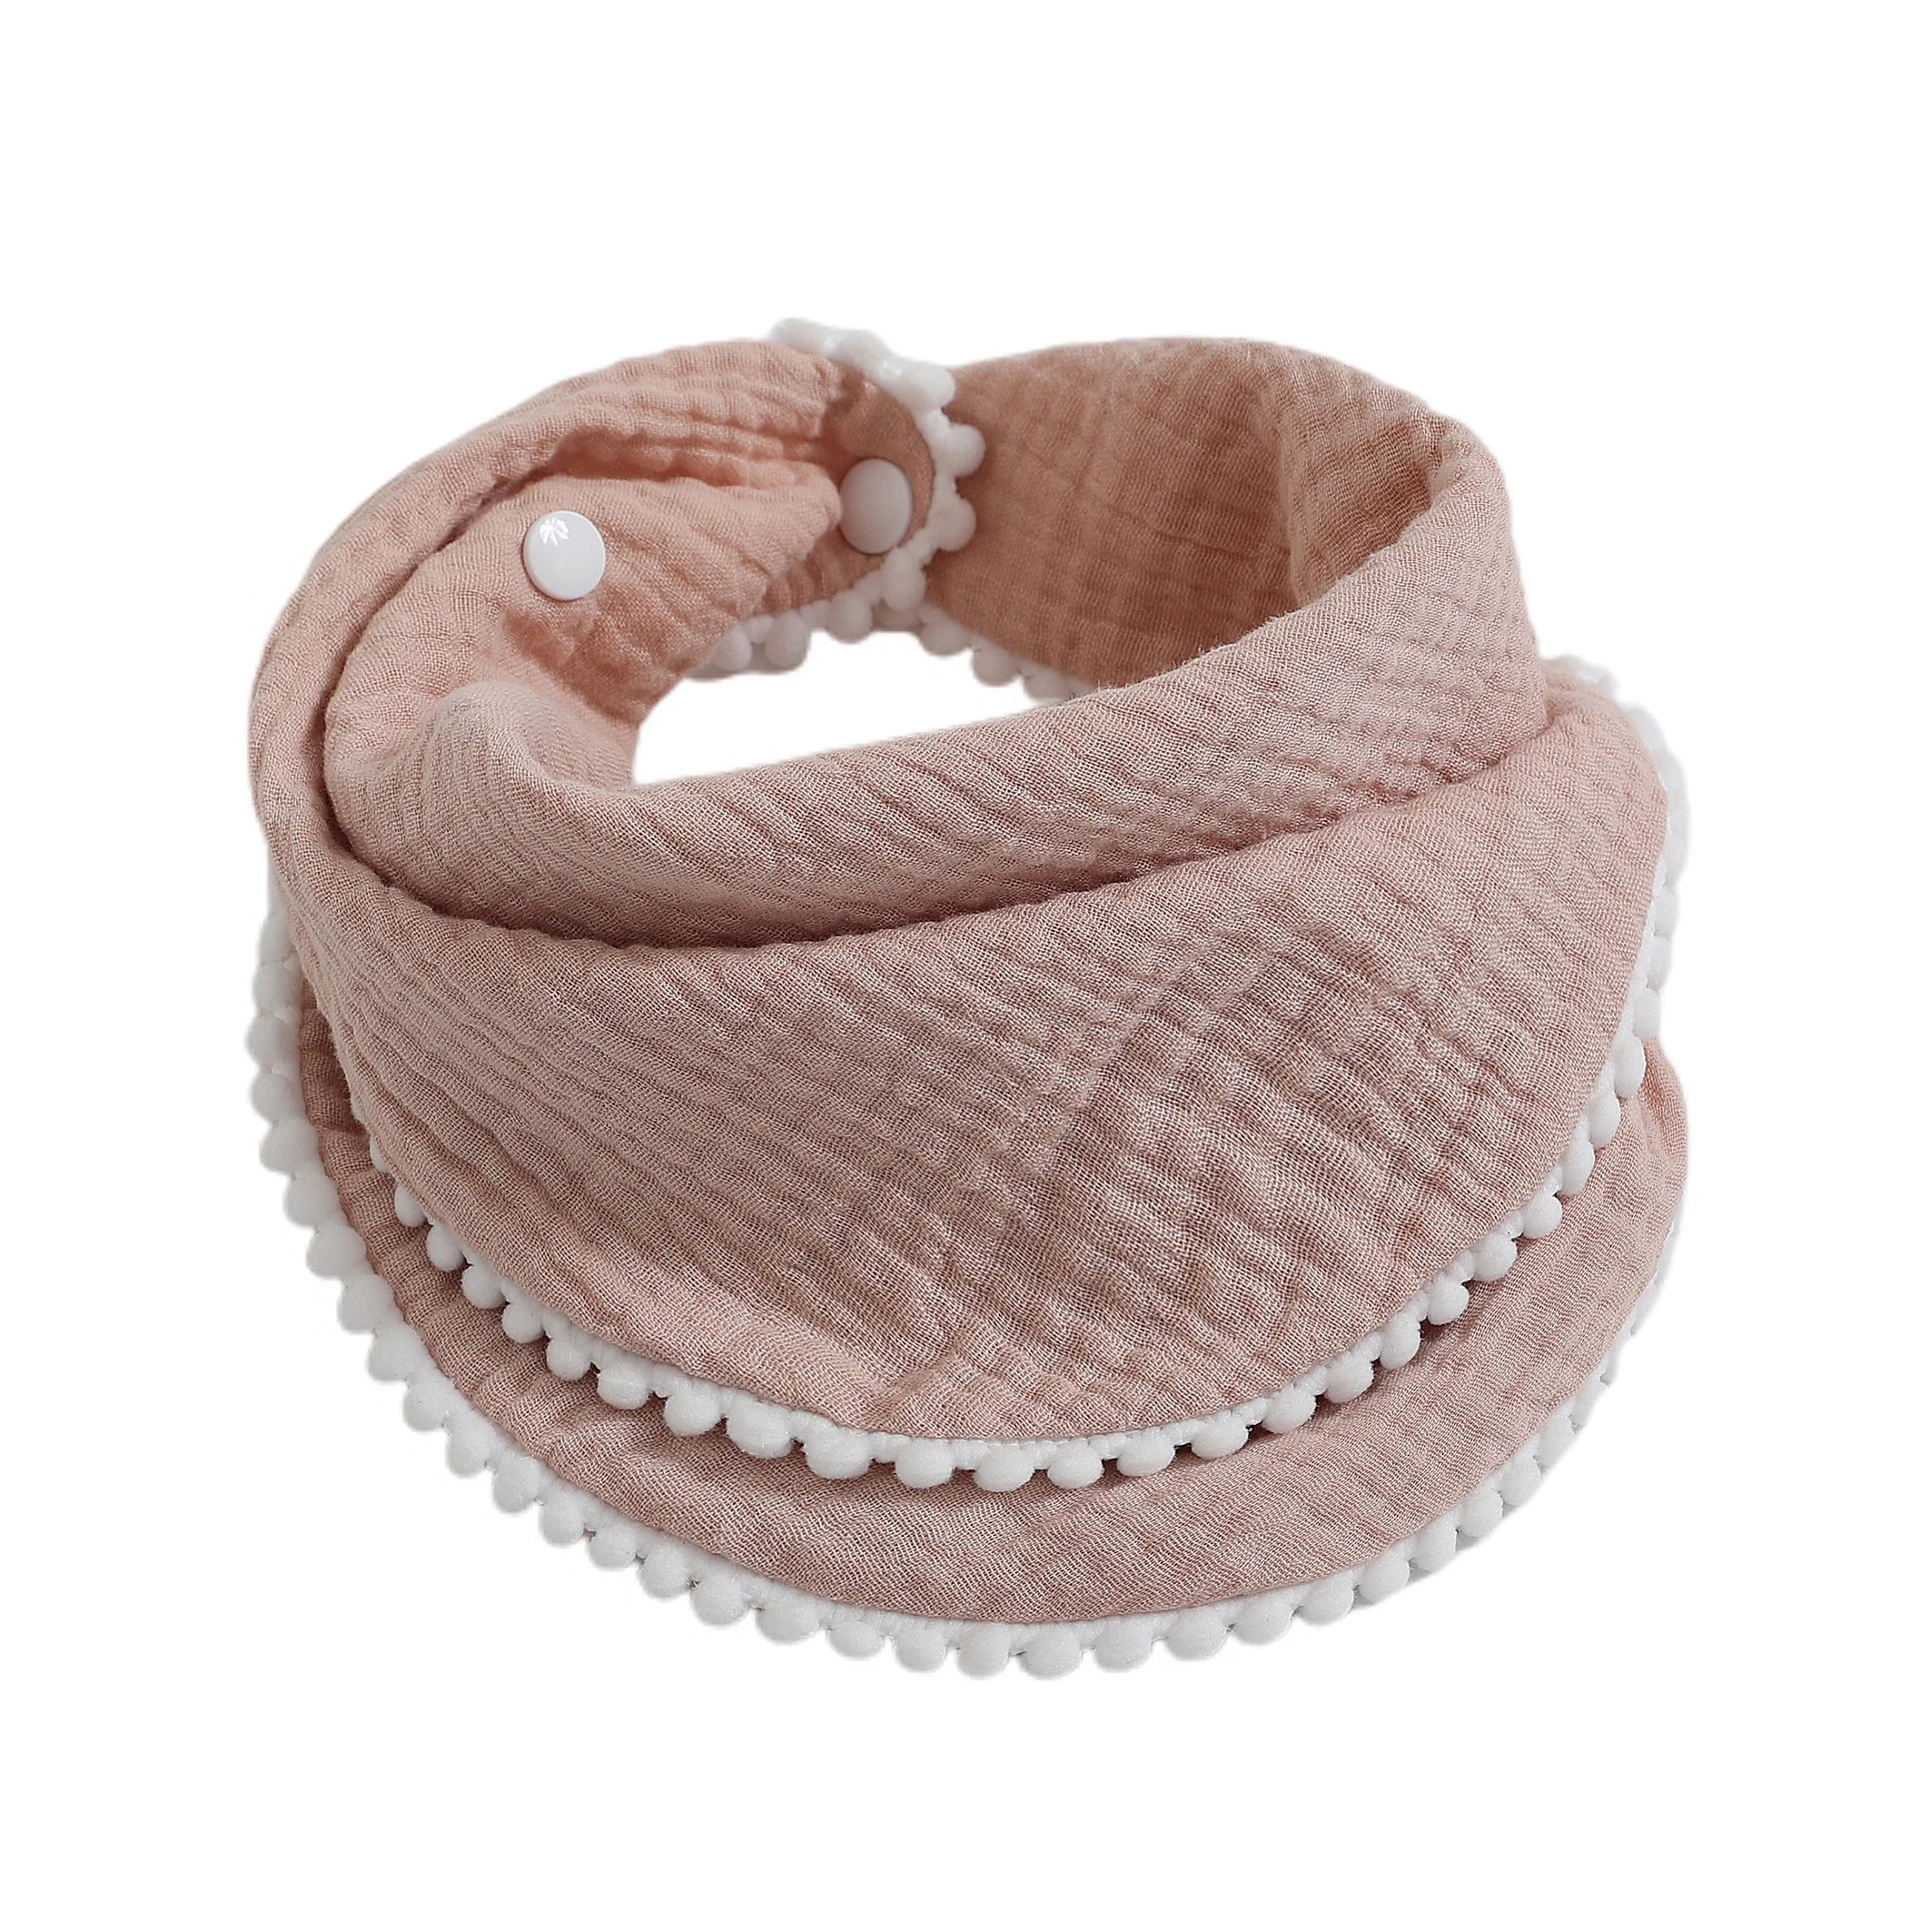 Hot Sale Soft Cotton Baby Bib Double Layer Gauze With Small Pompom Infant Feeding Bib